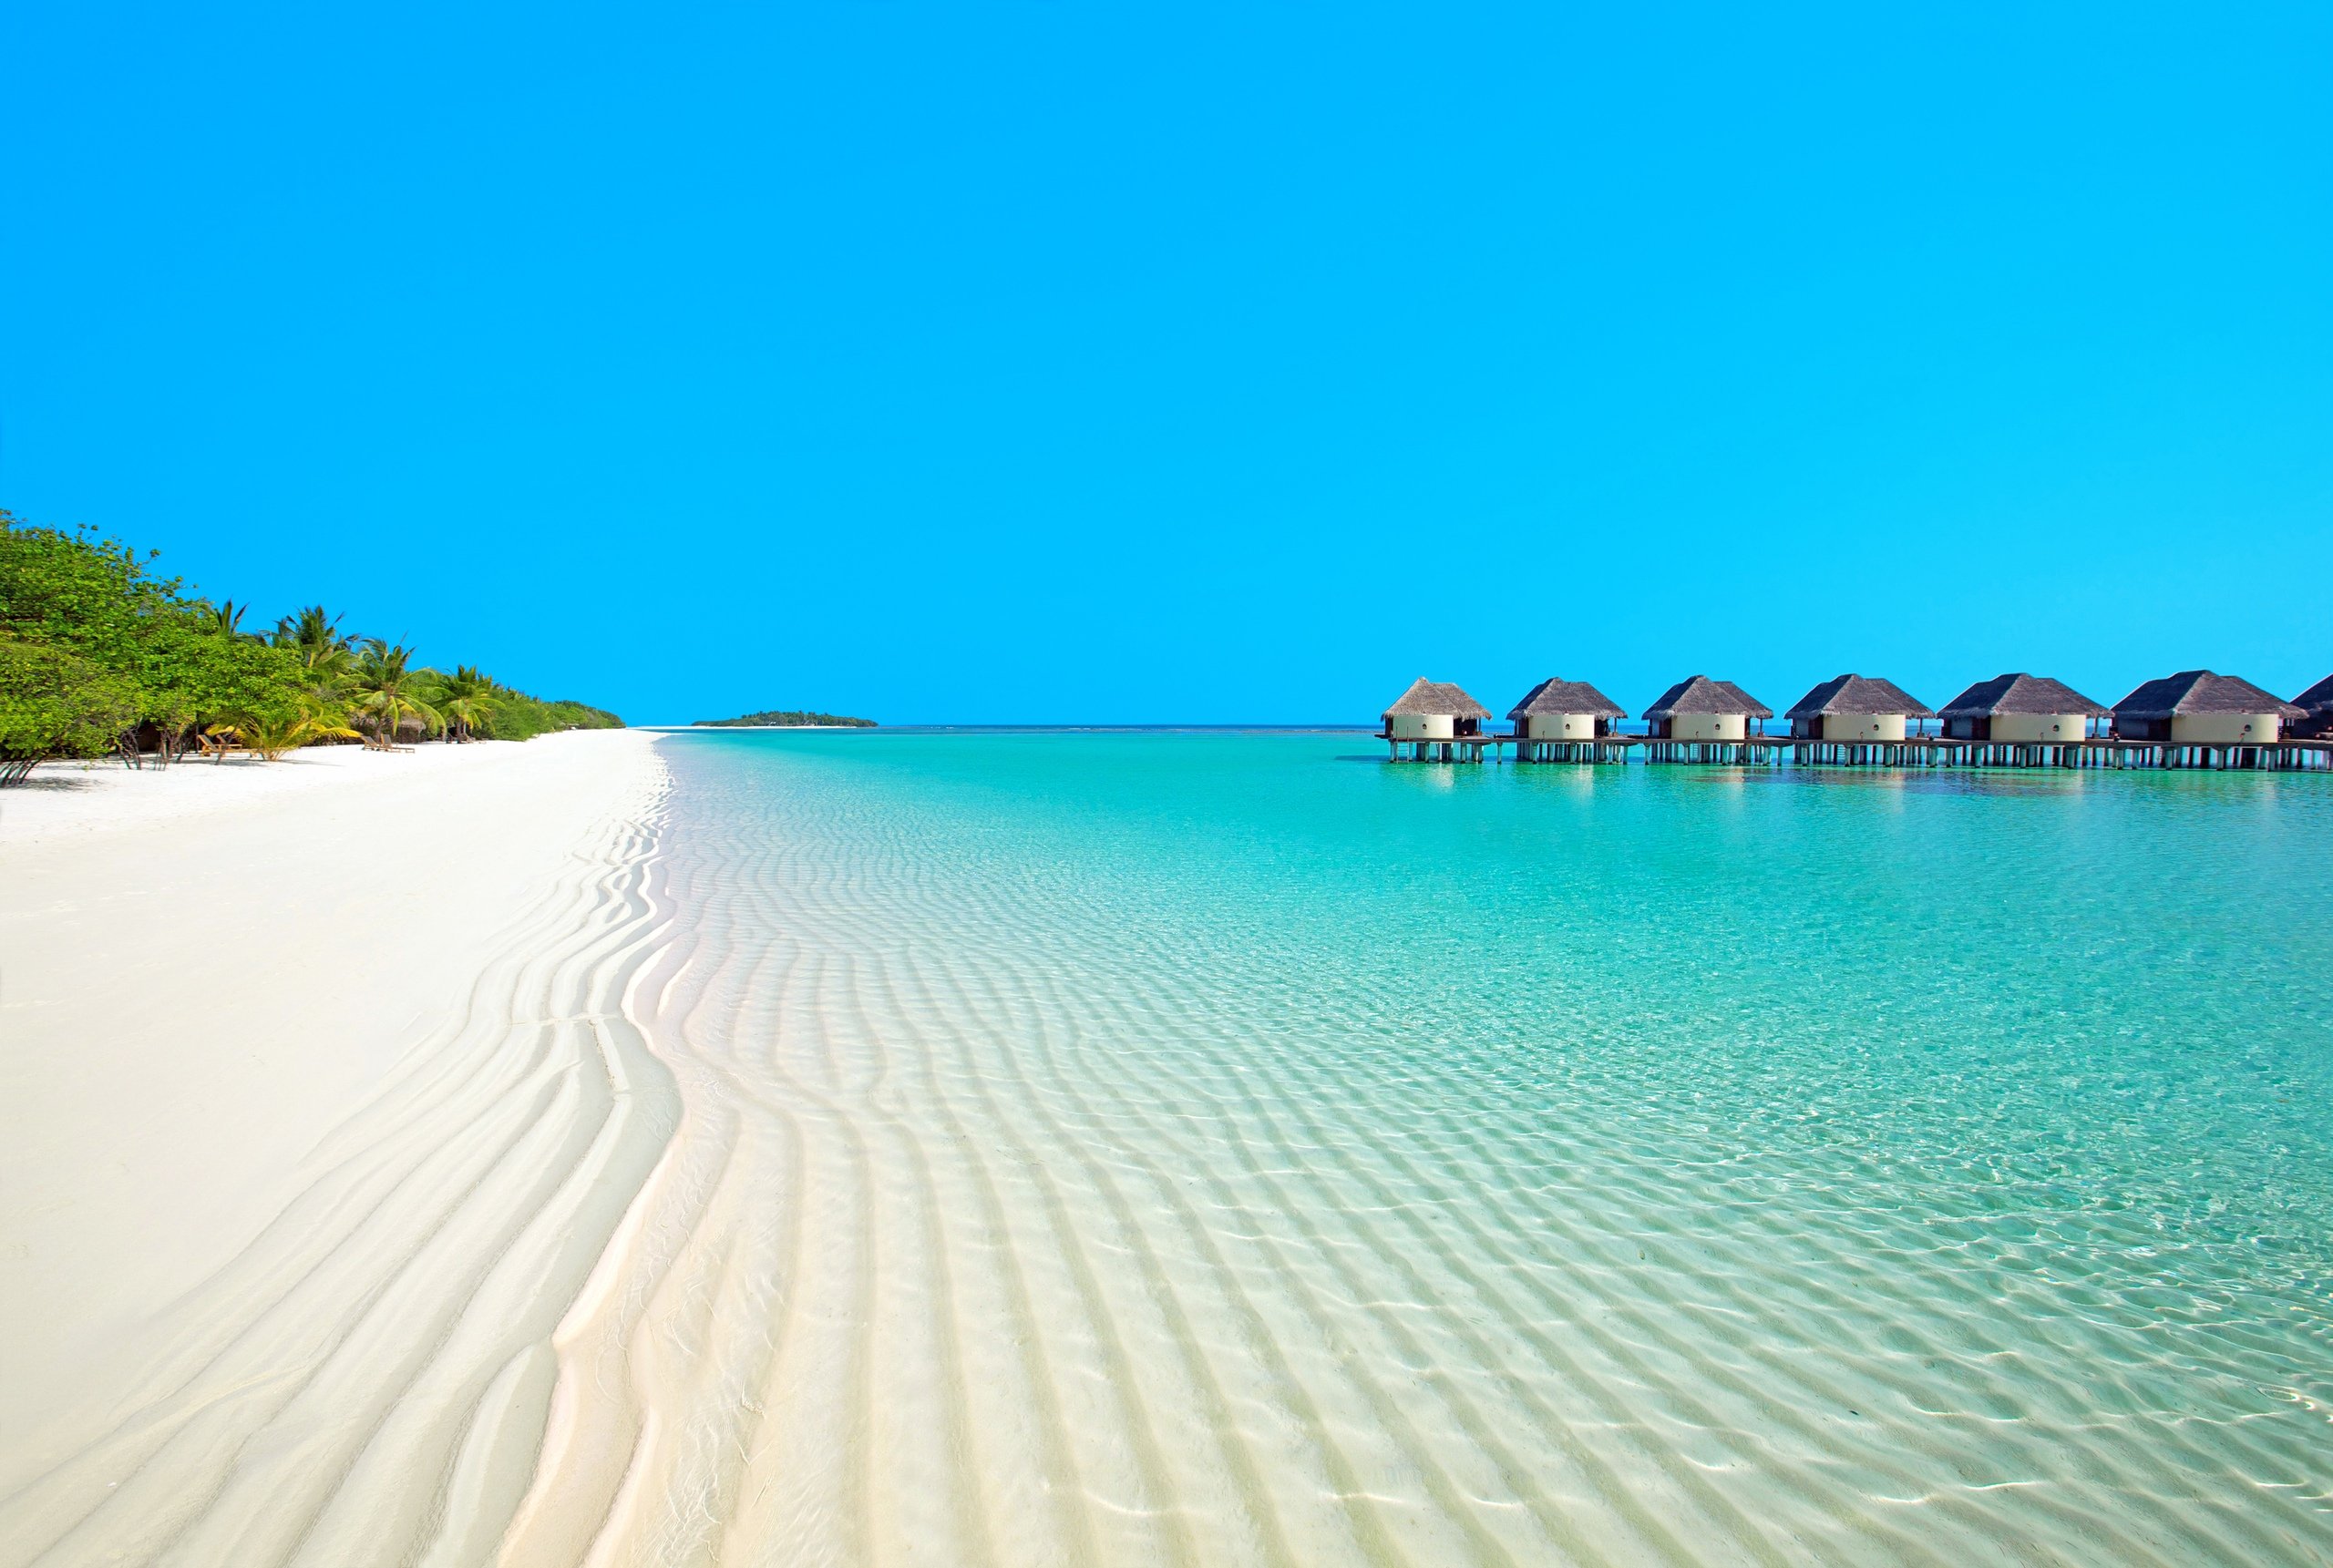 Остров Канухура Мальдивы. Парадайз Айленд Мальдивы. Остров Ваадху Мальдивы. Ла-Маддалена (архипелаг).